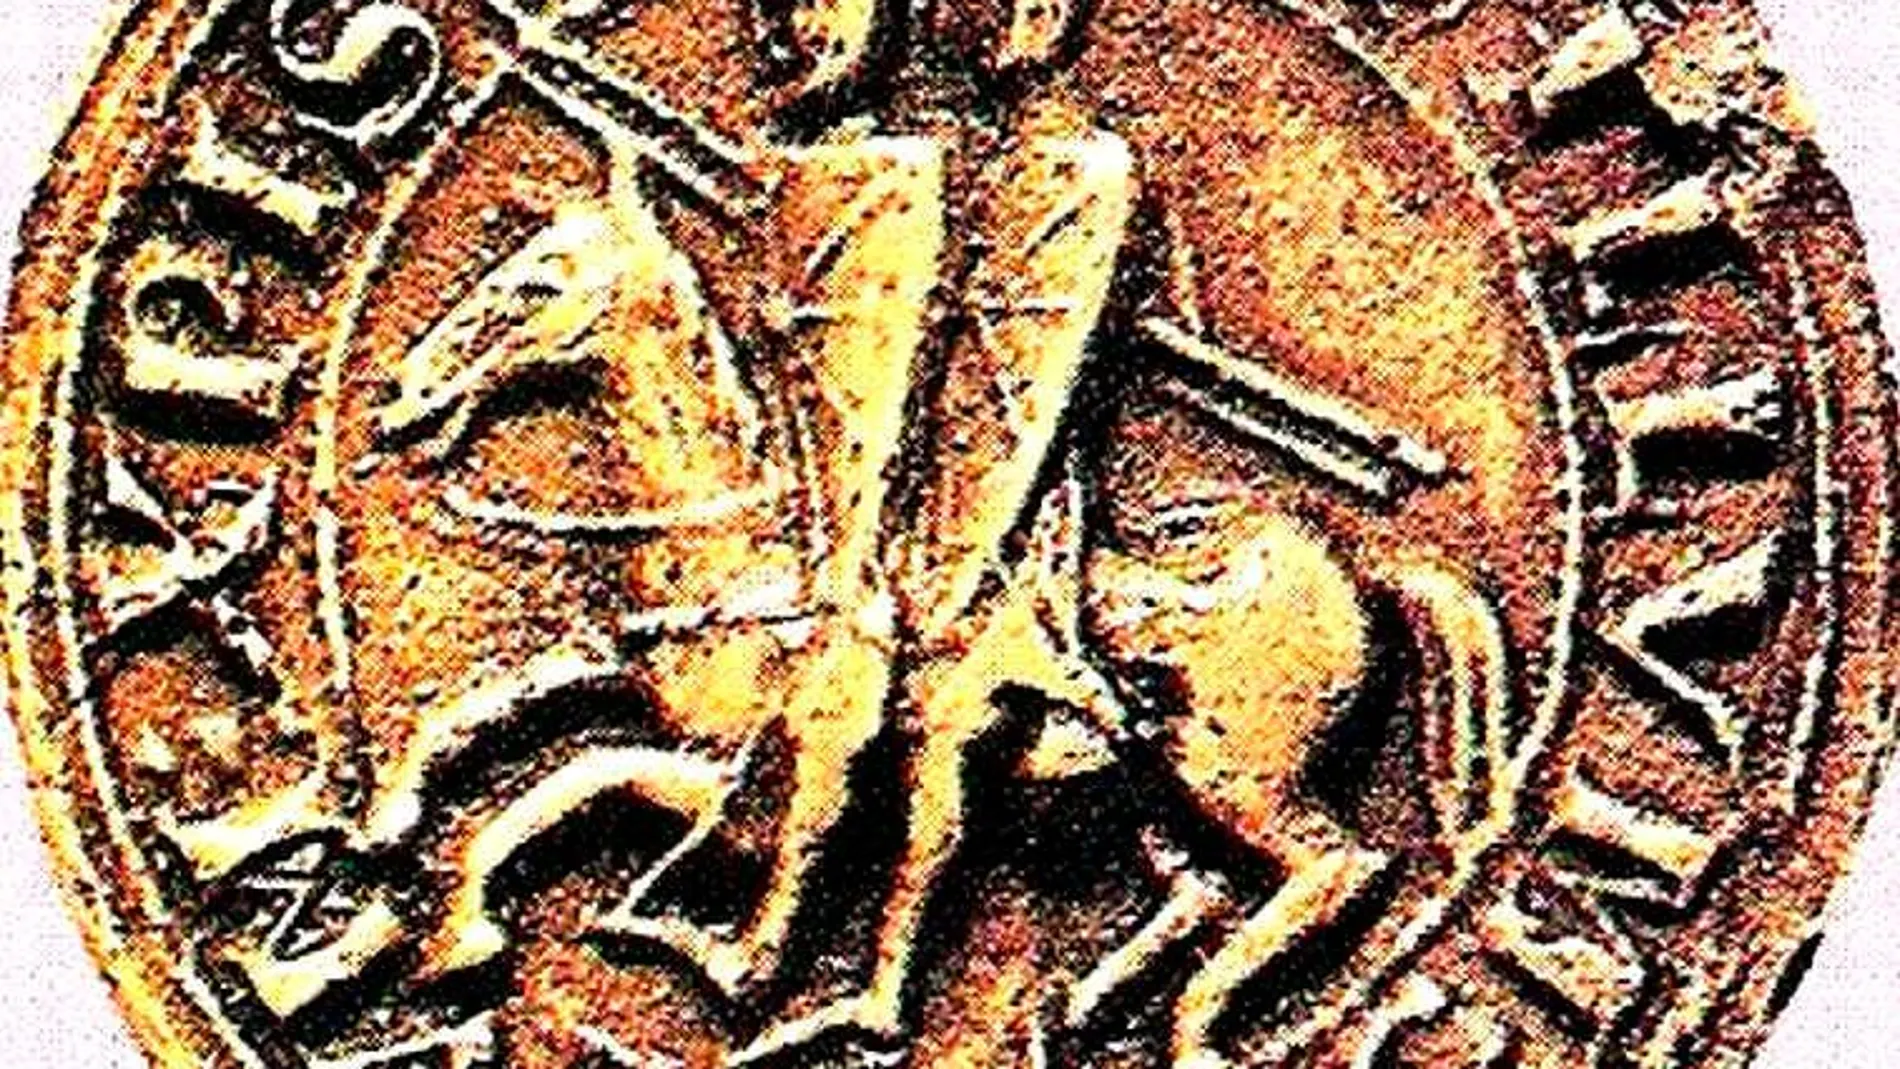 El sello de los templarios muestra a dos miembros subidos en un solo caballo, lo cual simboliza la pobreza de la Orden